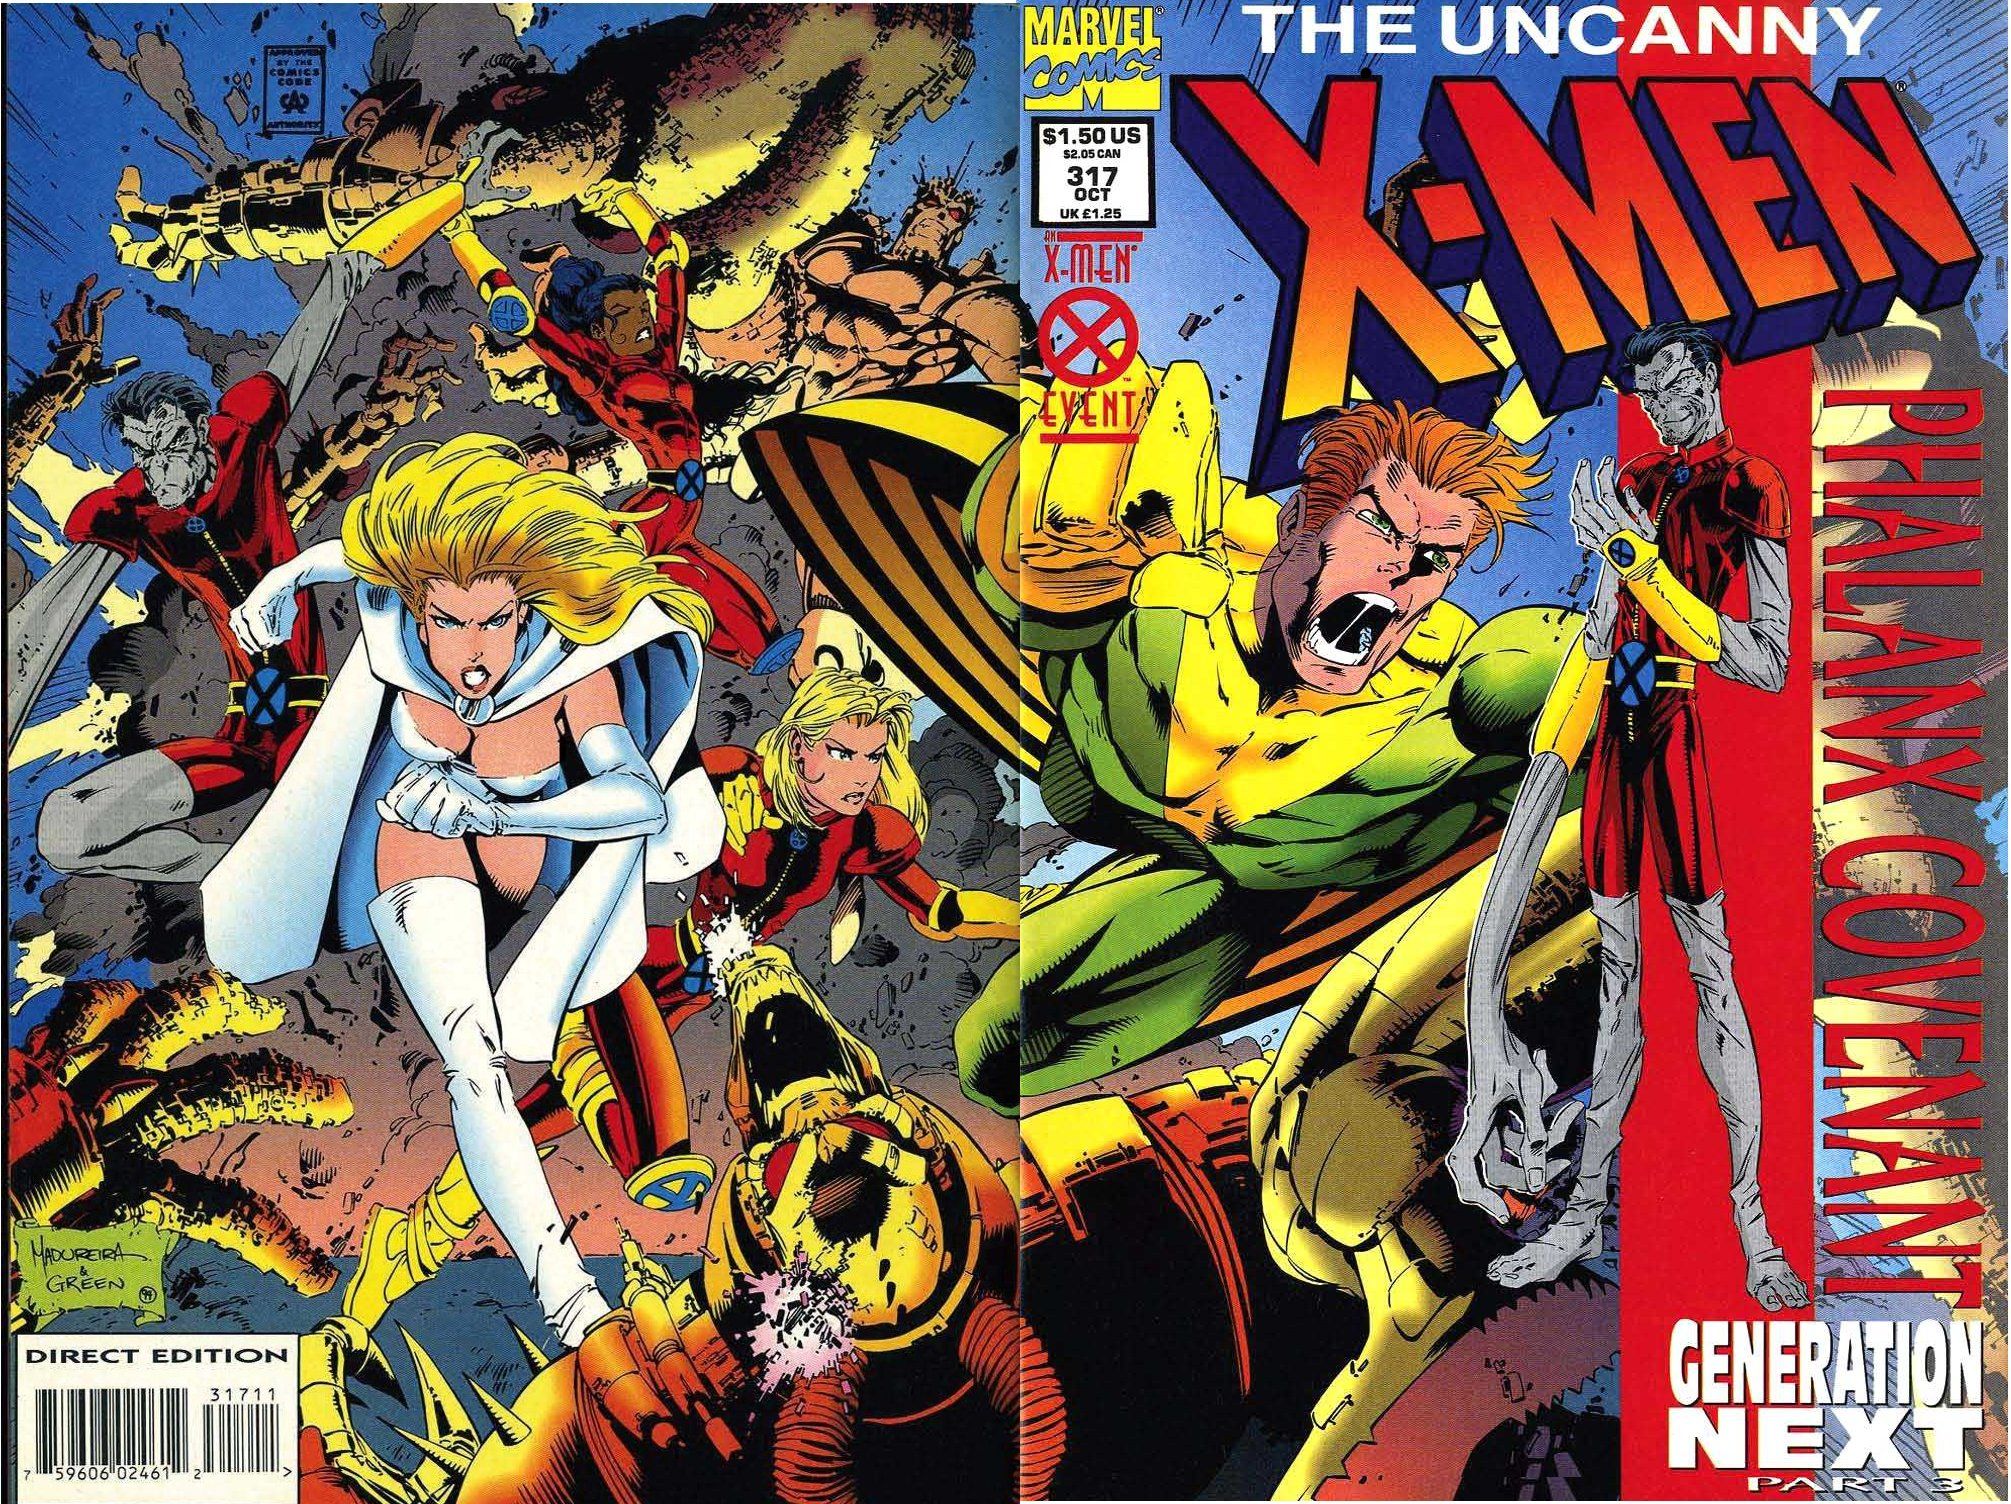 The Uncanny X Men Wallpaper, Comics, HQ The Uncanny X Men